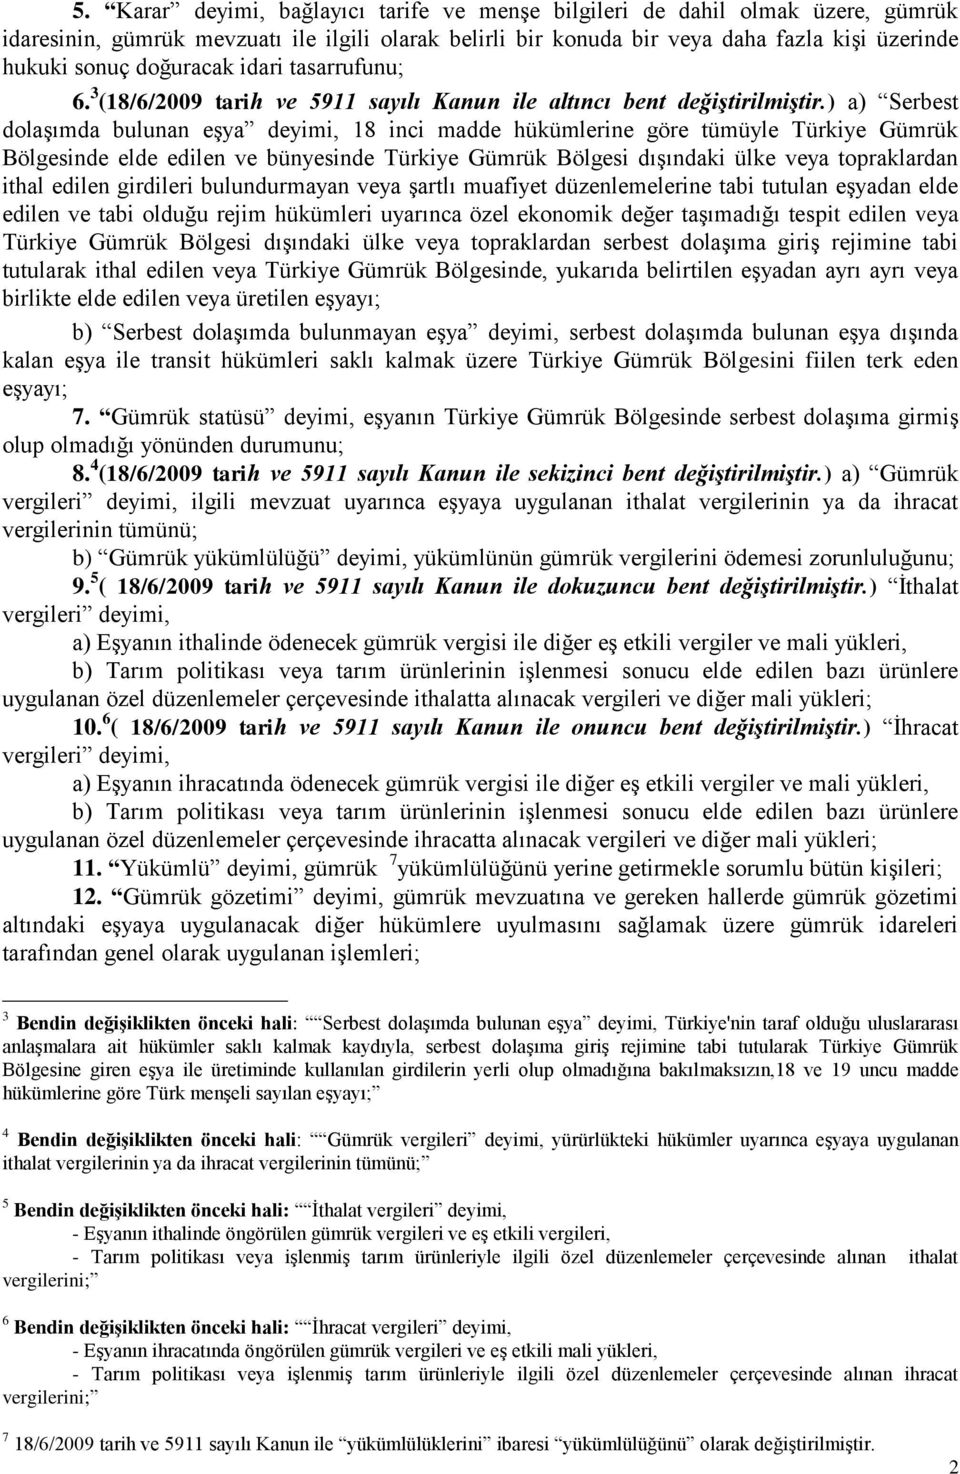 ) a) Serbest dolaşımda bulunan eşya deyimi, 18 inci madde hükümlerine göre tümüyle Türkiye Gümrük Bölgesinde elde edilen ve bünyesinde Türkiye Gümrük Bölgesi dışındaki ülke veya topraklardan ithal